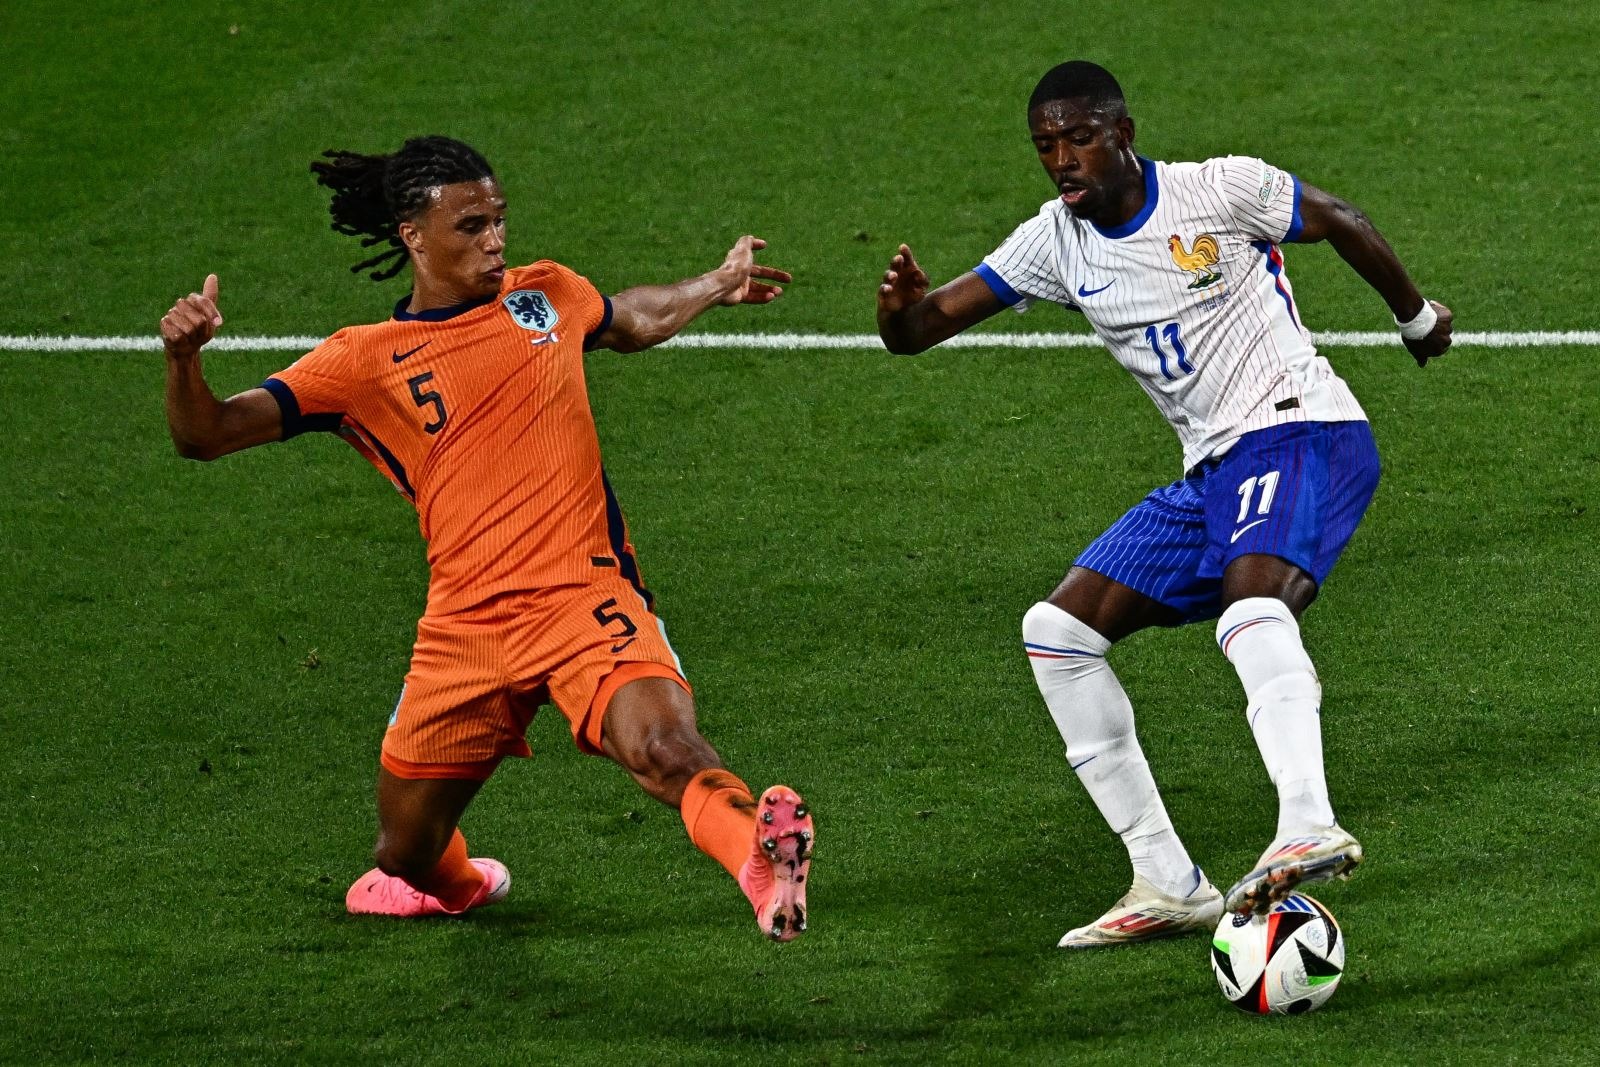 Pha tranh bóng giữa cầu thủ đội tuyển Pháp và đội tuyển Hà Lan. Ảnh: AFP/TTXVN